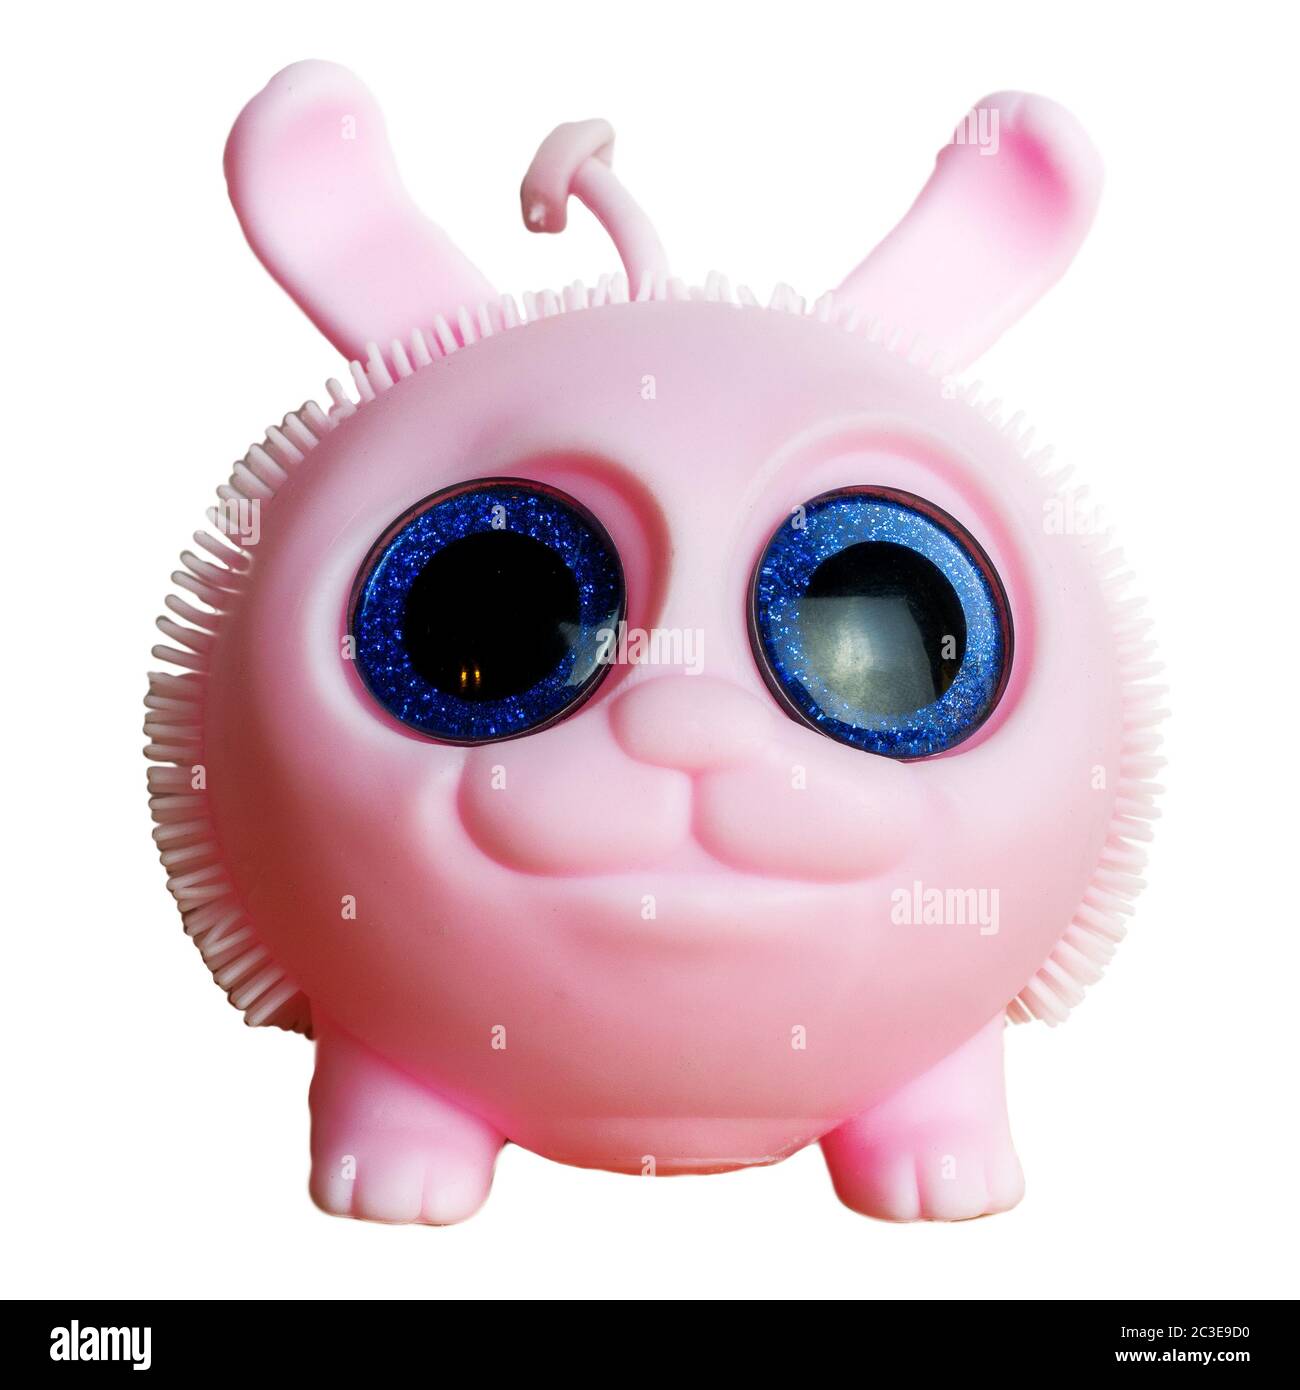 Rosa runde Gummispielzeug mit großen runden blauen Augen auf einem isolierten Hintergrund Stockfoto